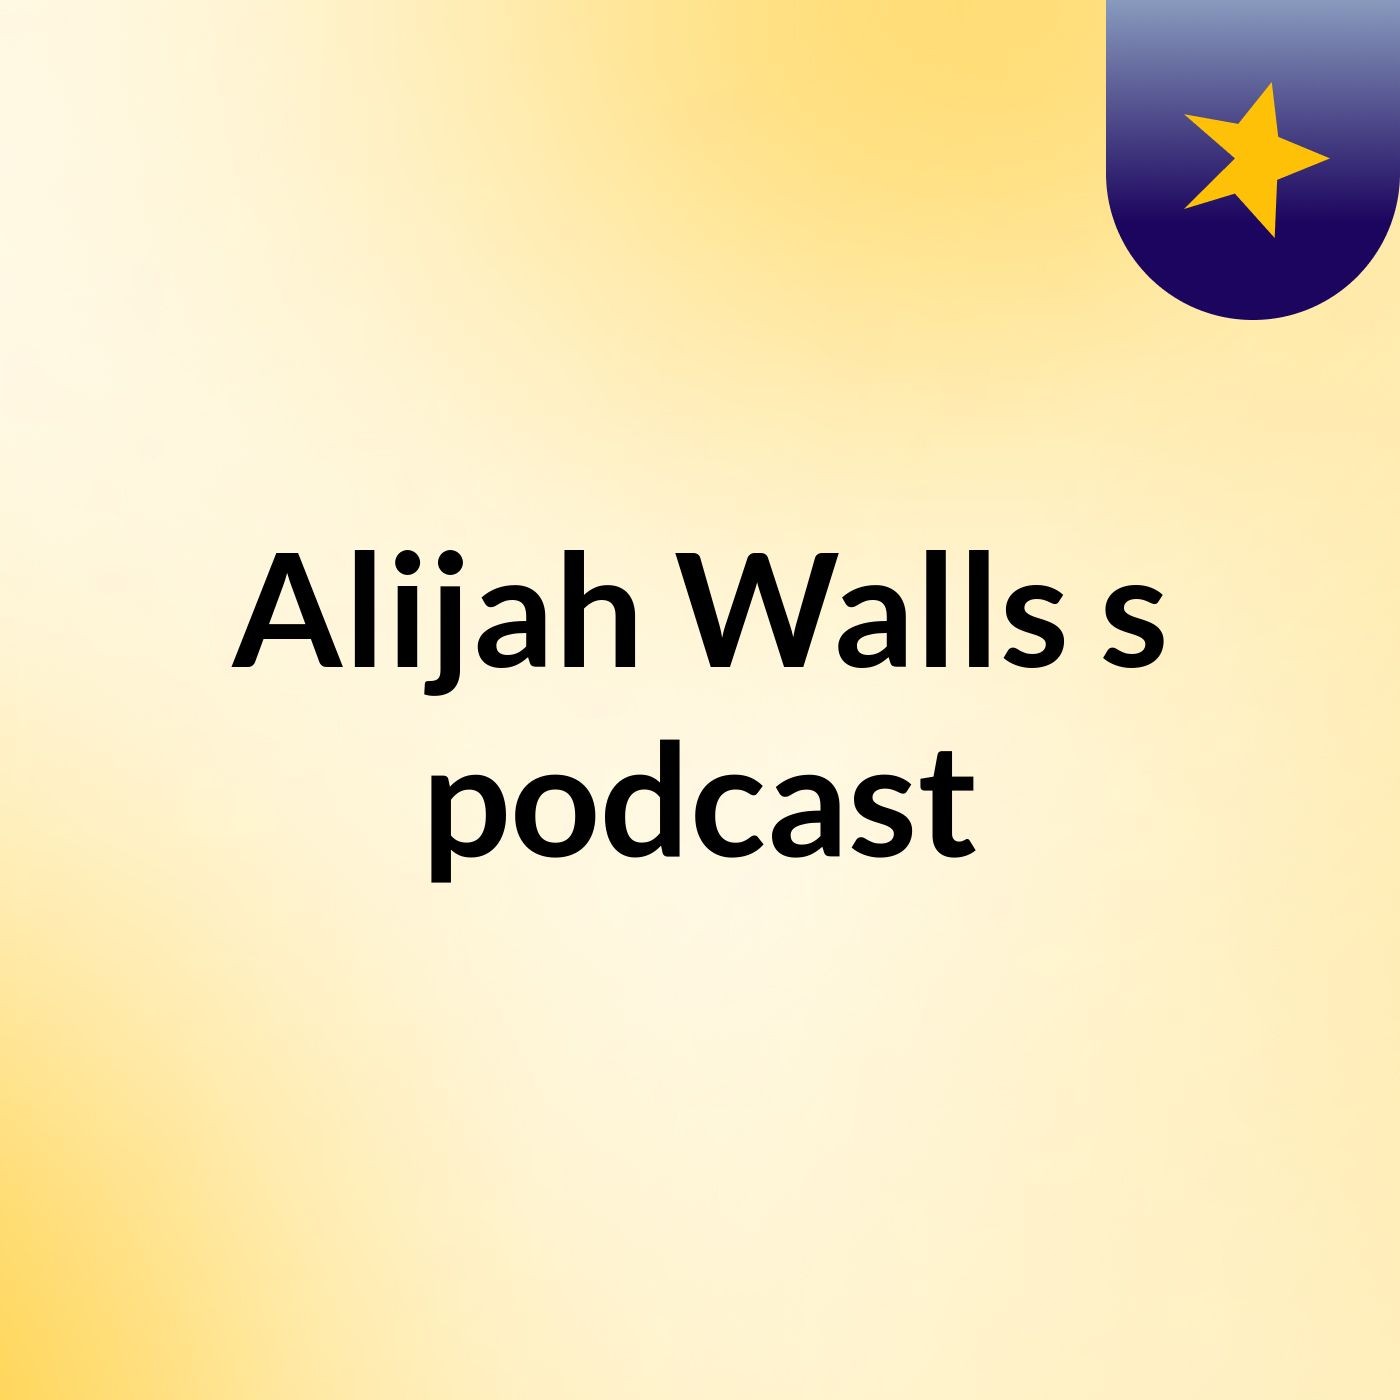 Episode 5 - Alijah Walls's podcast